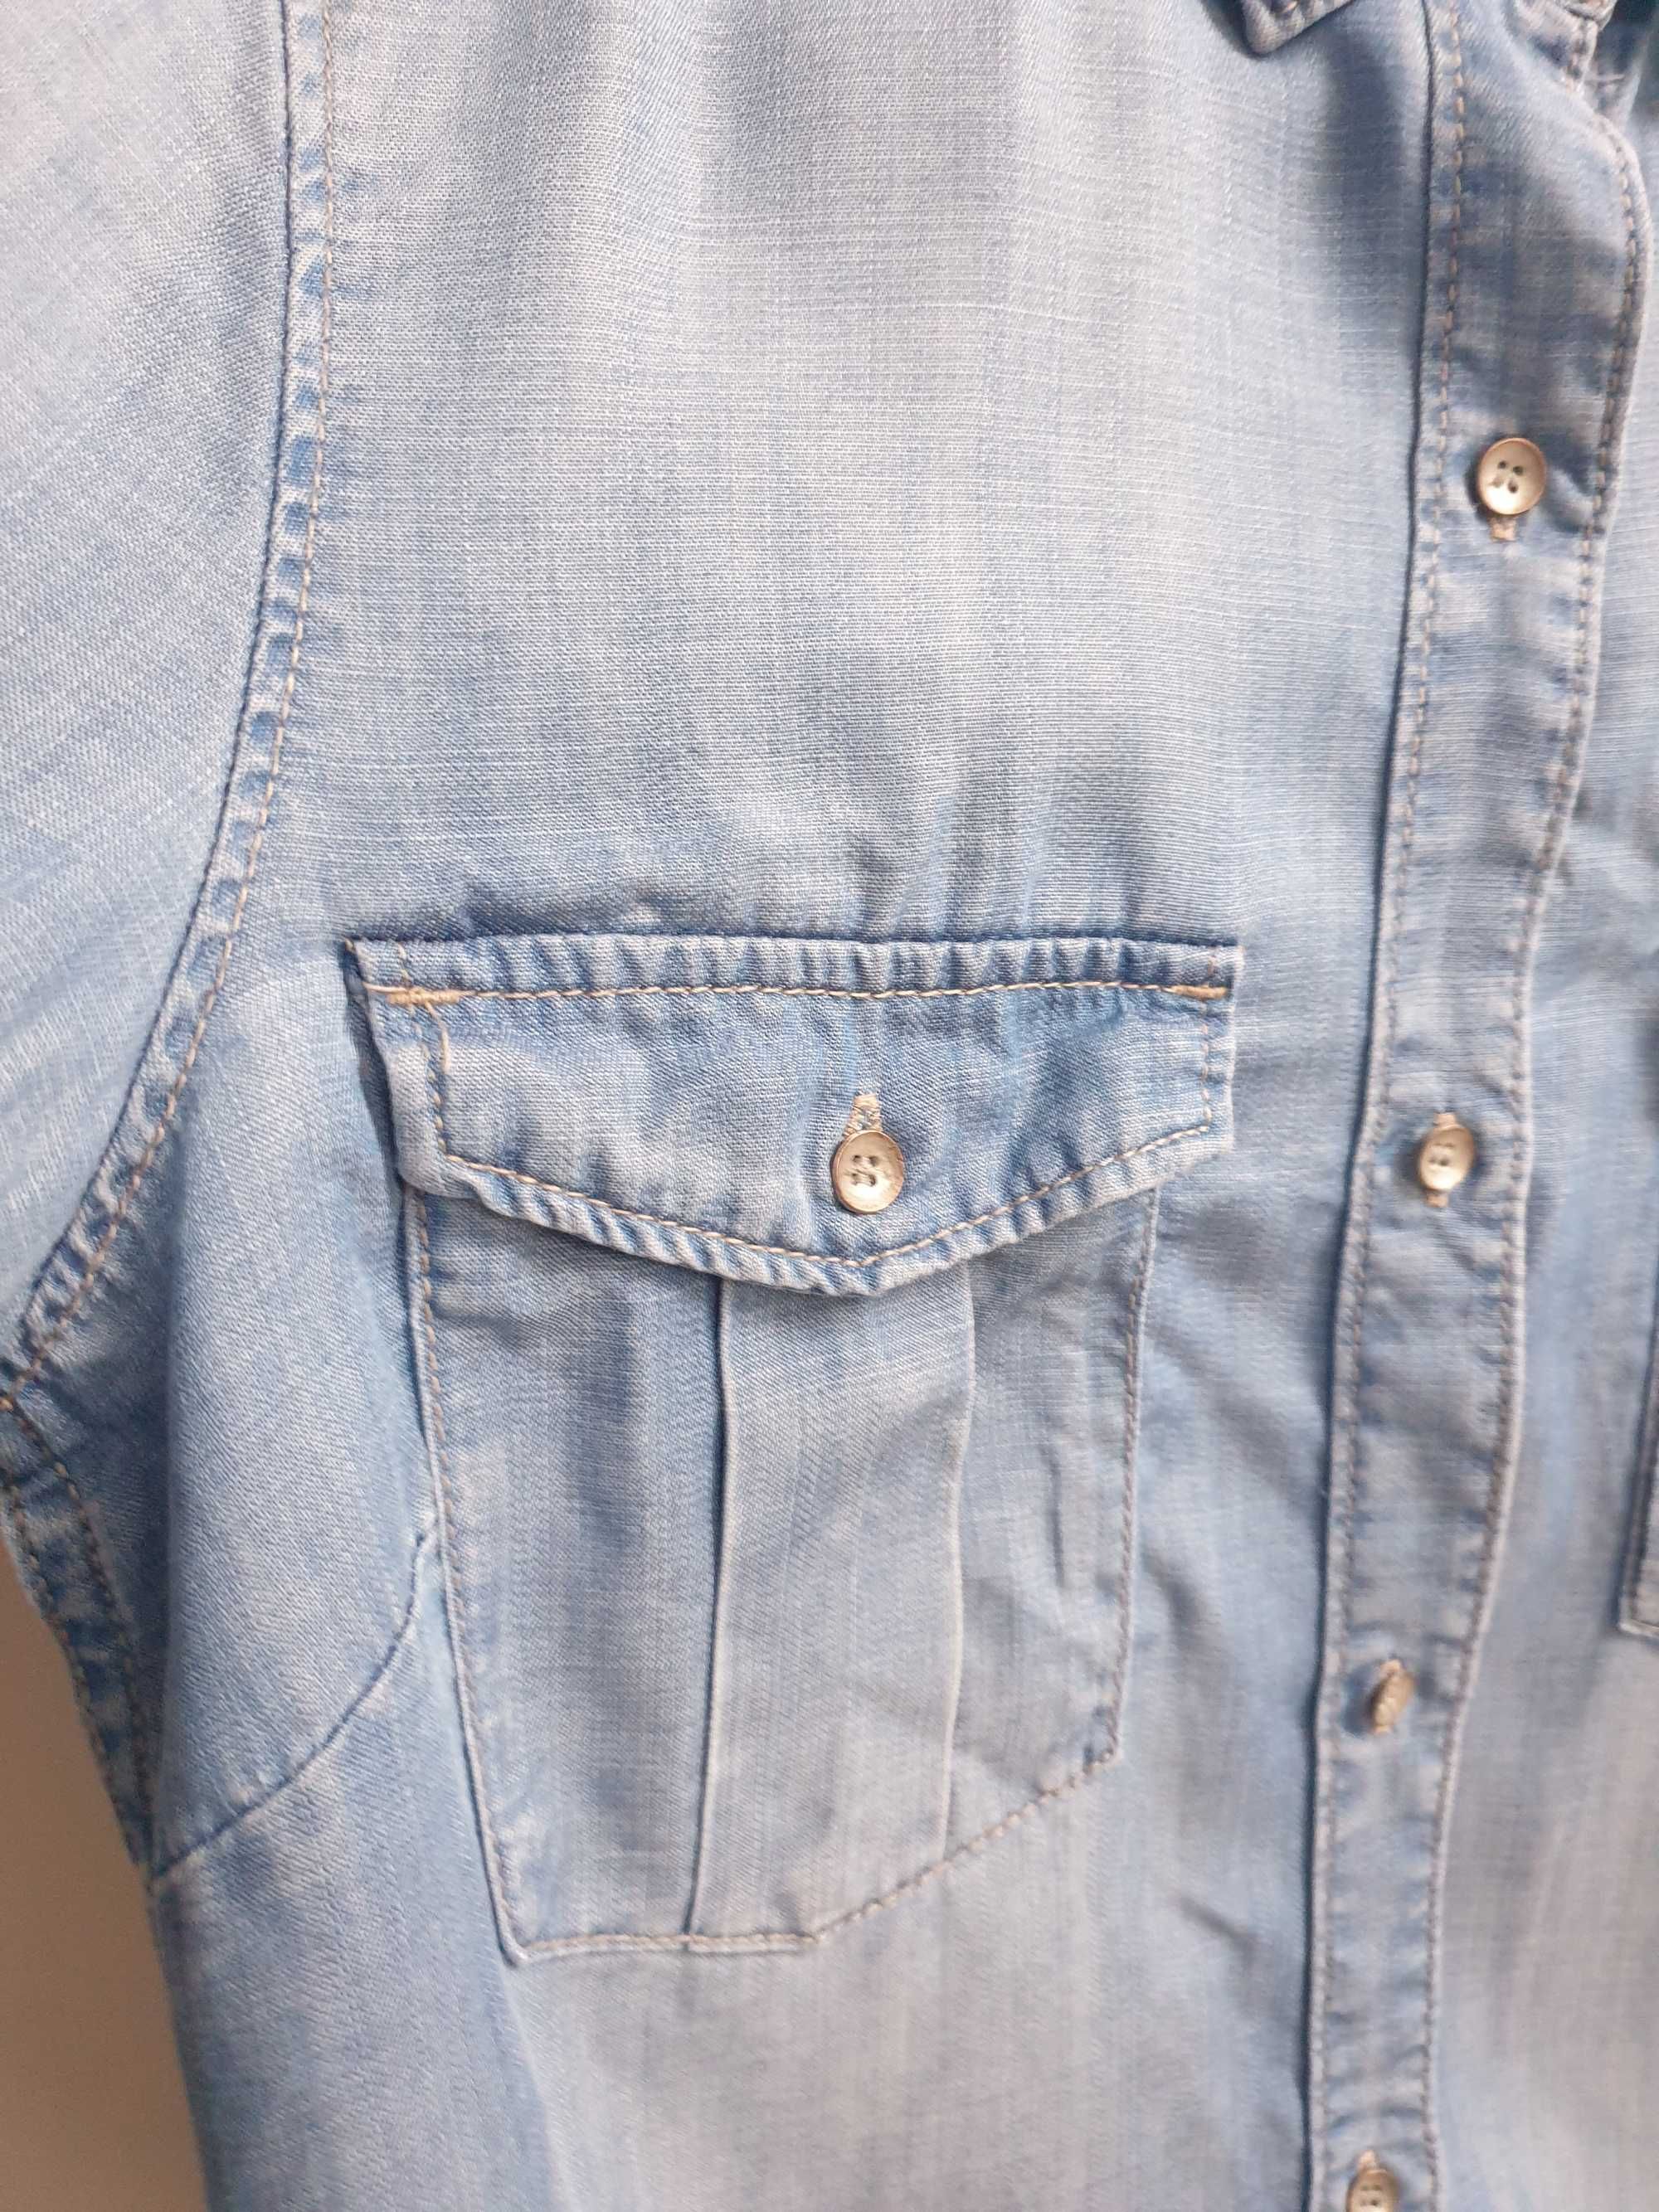 Niebieska koszula dżinsowa 34 &Denim H&M 100% liocel lyocell